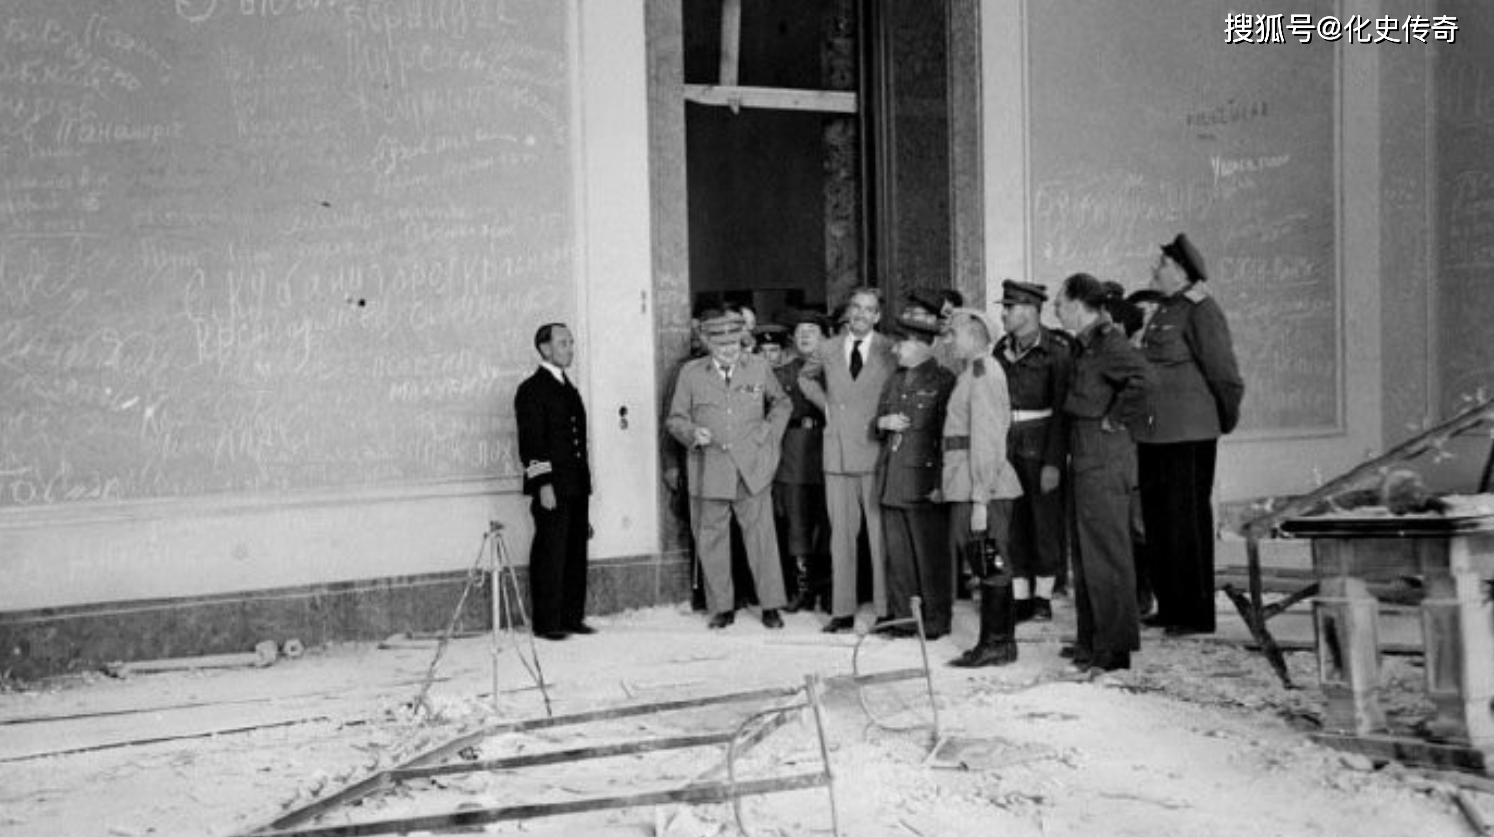 1945年,德国无条件投降,丘吉尔摆出胜利手势